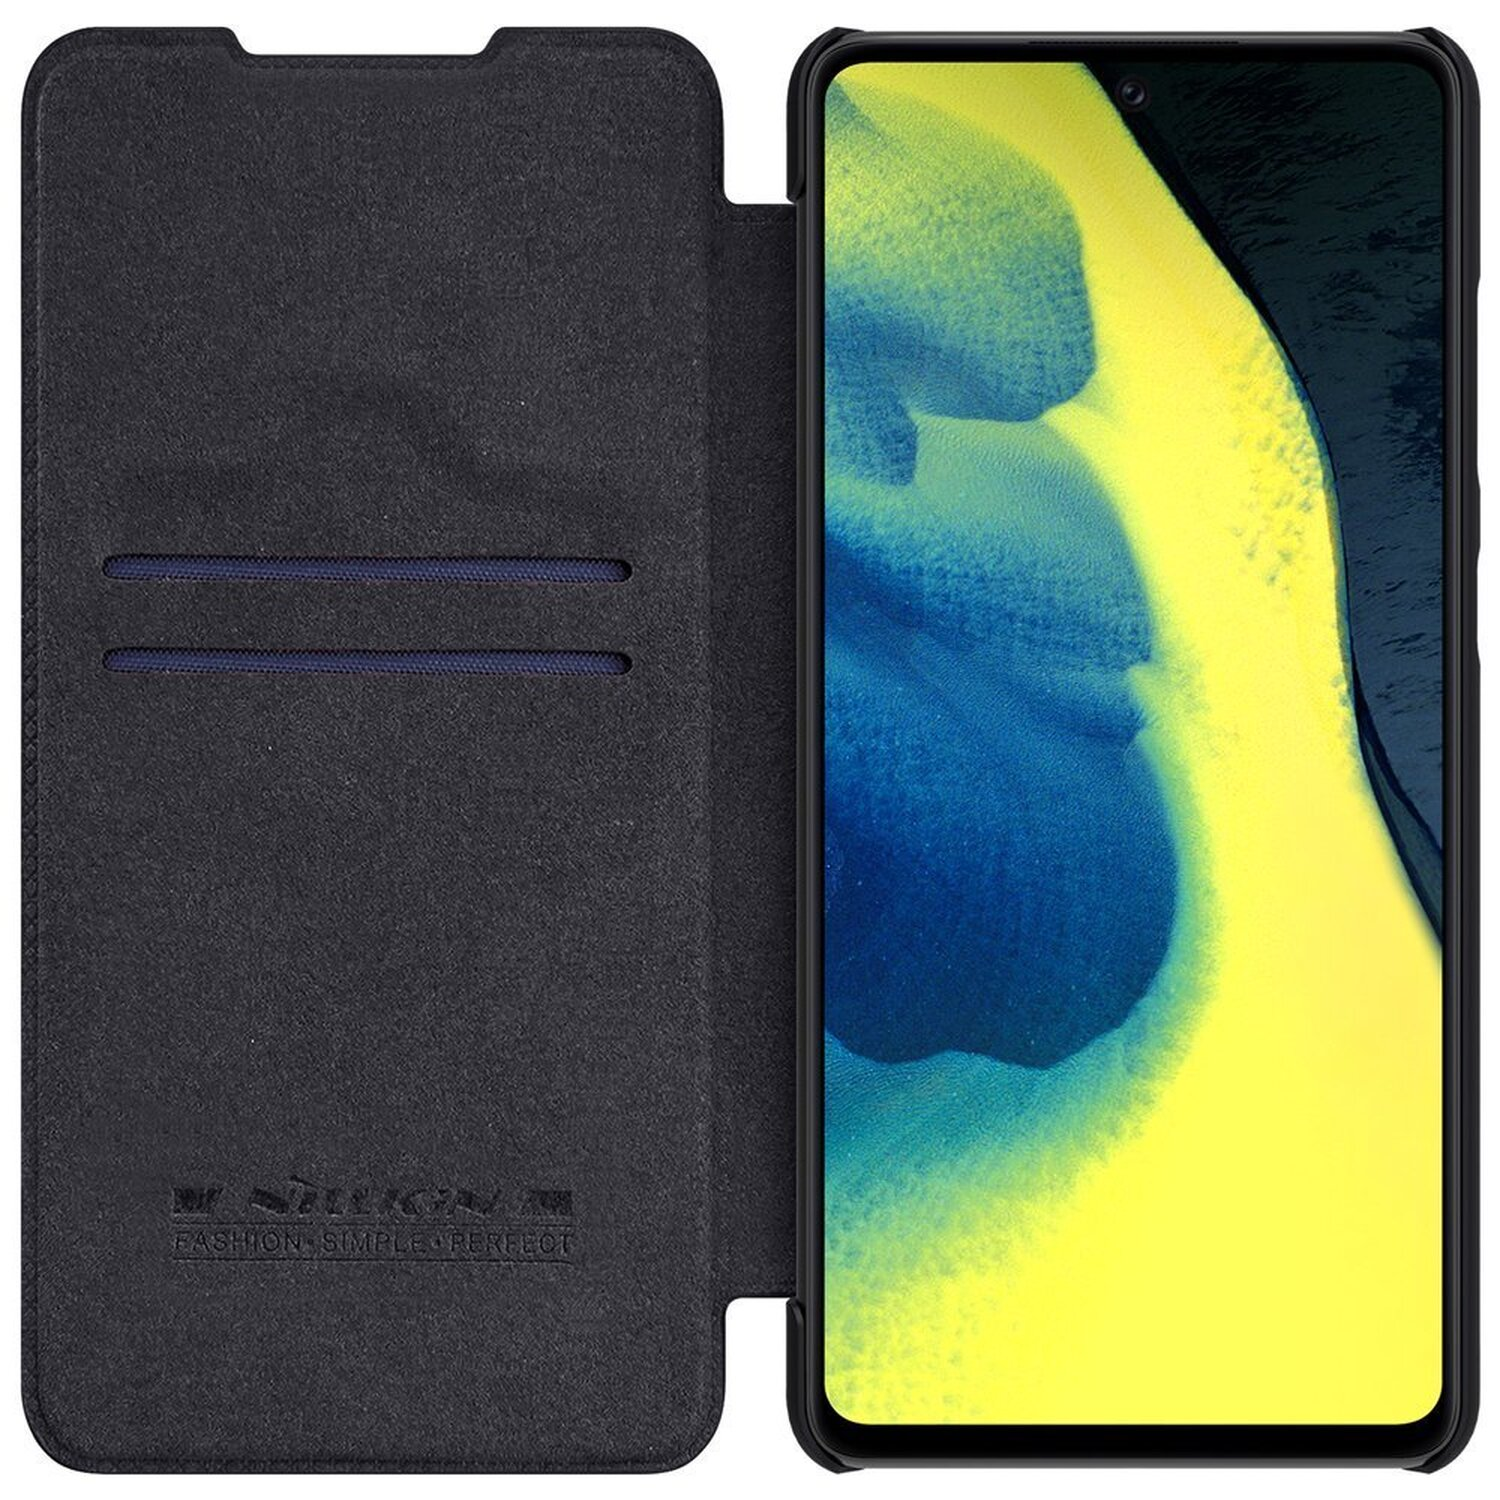 Redmi Pro, Xiaomi, Note Tasche, Schwarz 11 NILLKIN Bookcover, Buch